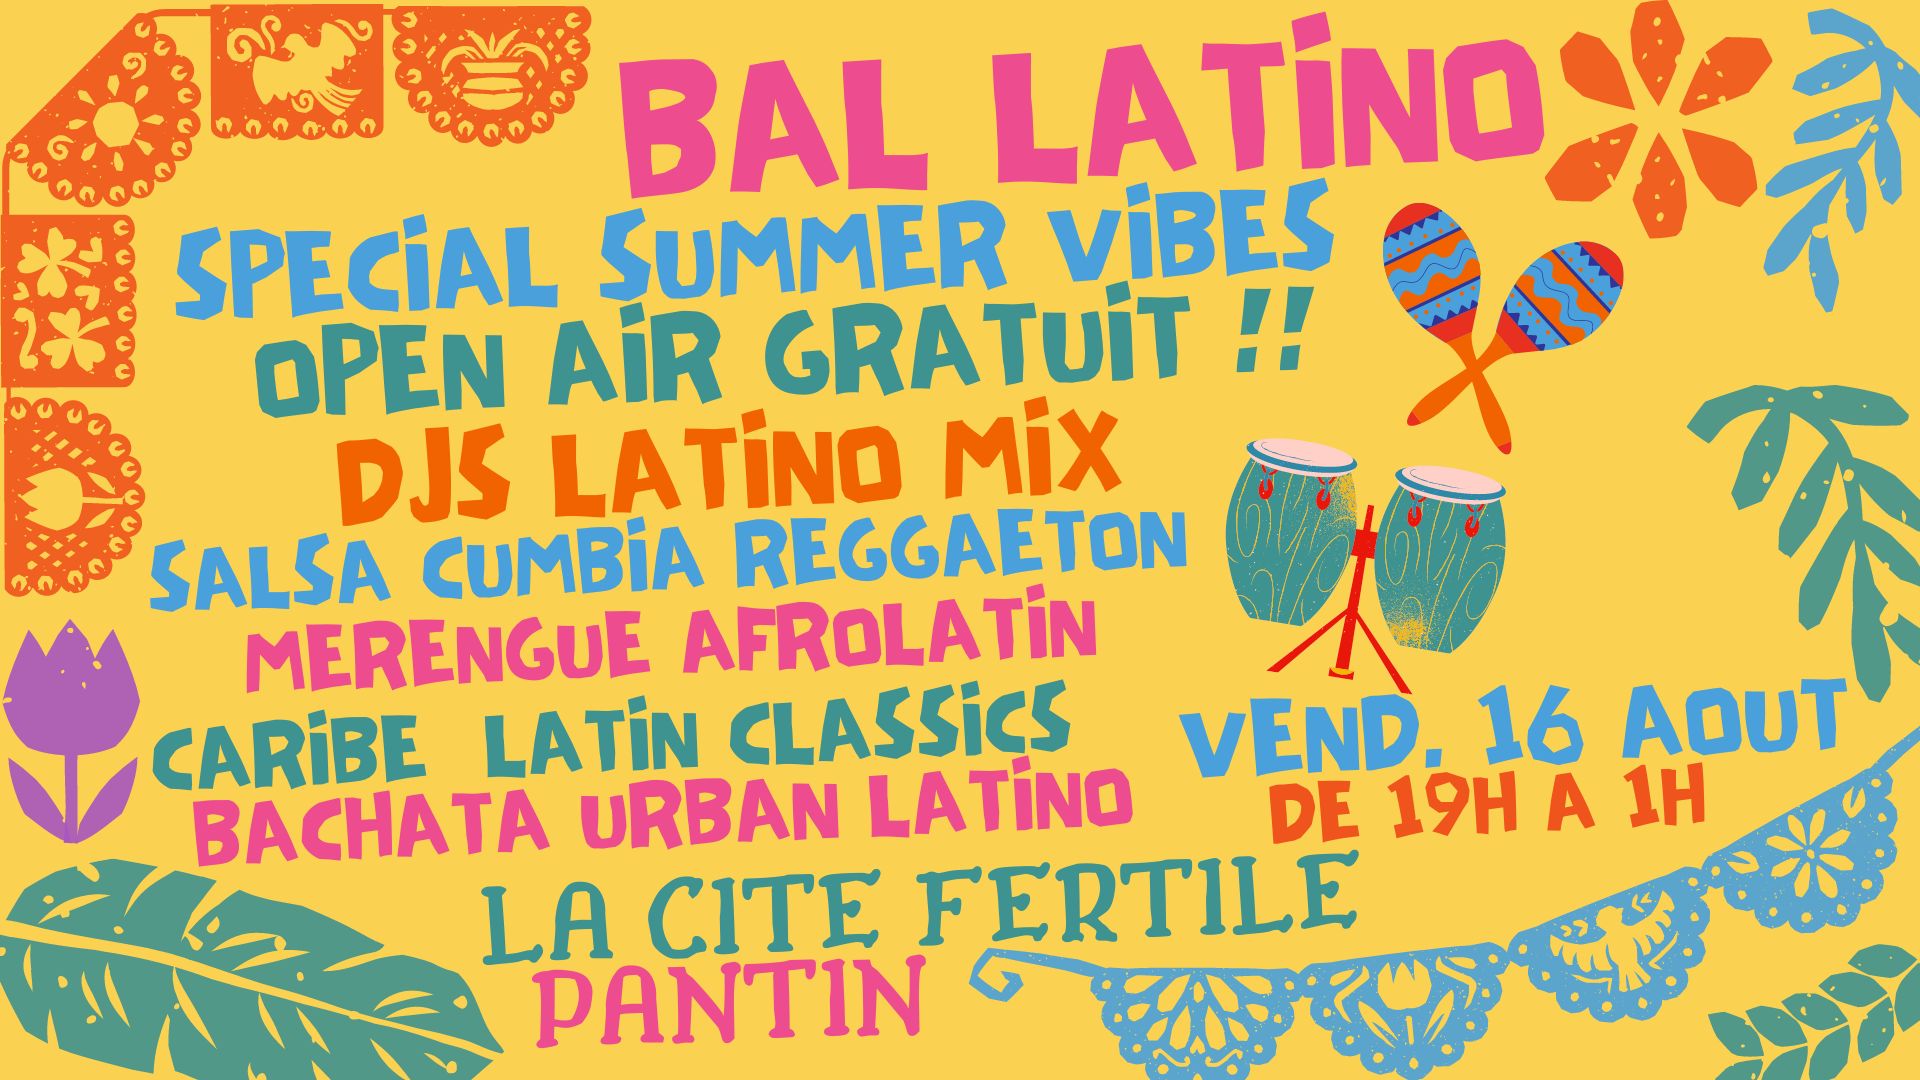 Bal latino spécial summer vibes - open air gratuit